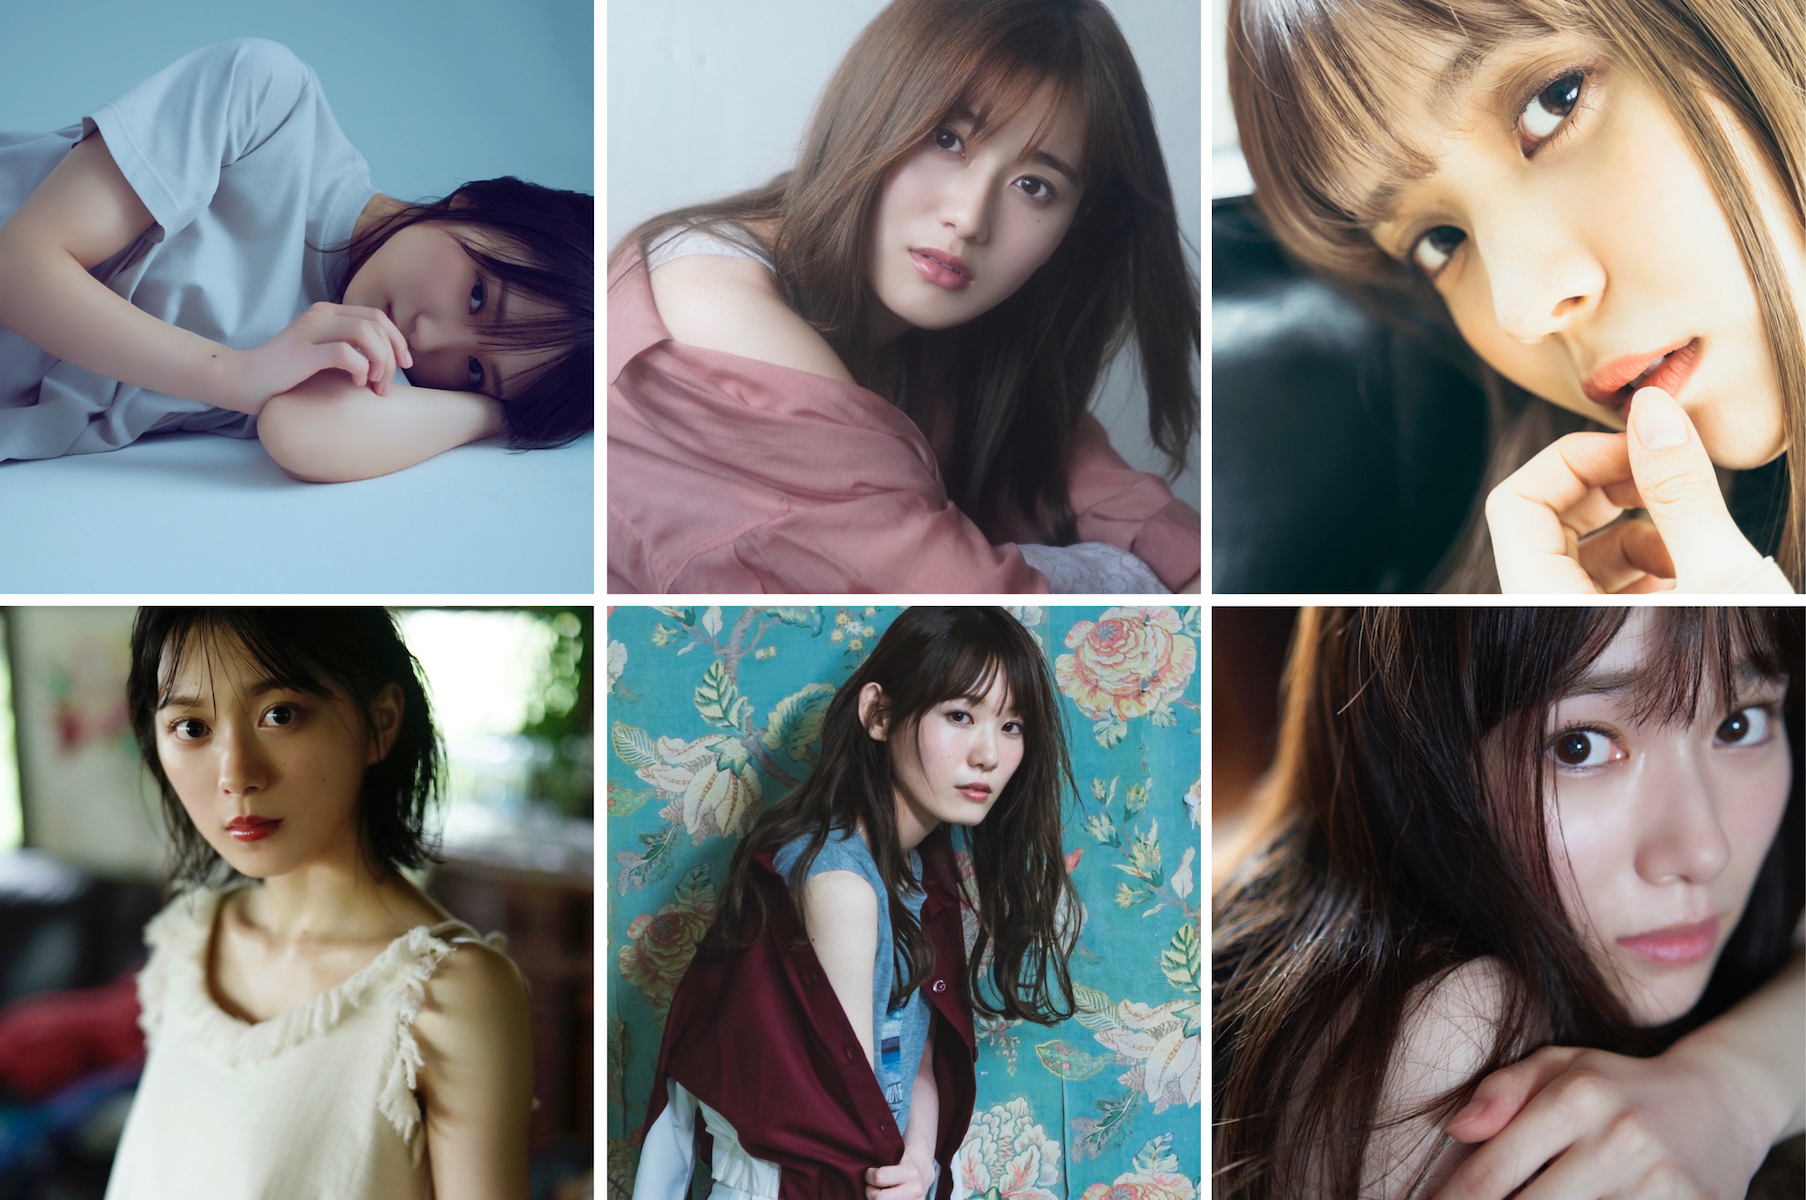 欅坂46メンバー6人、それぞれの魅力全開のソロショットが公開